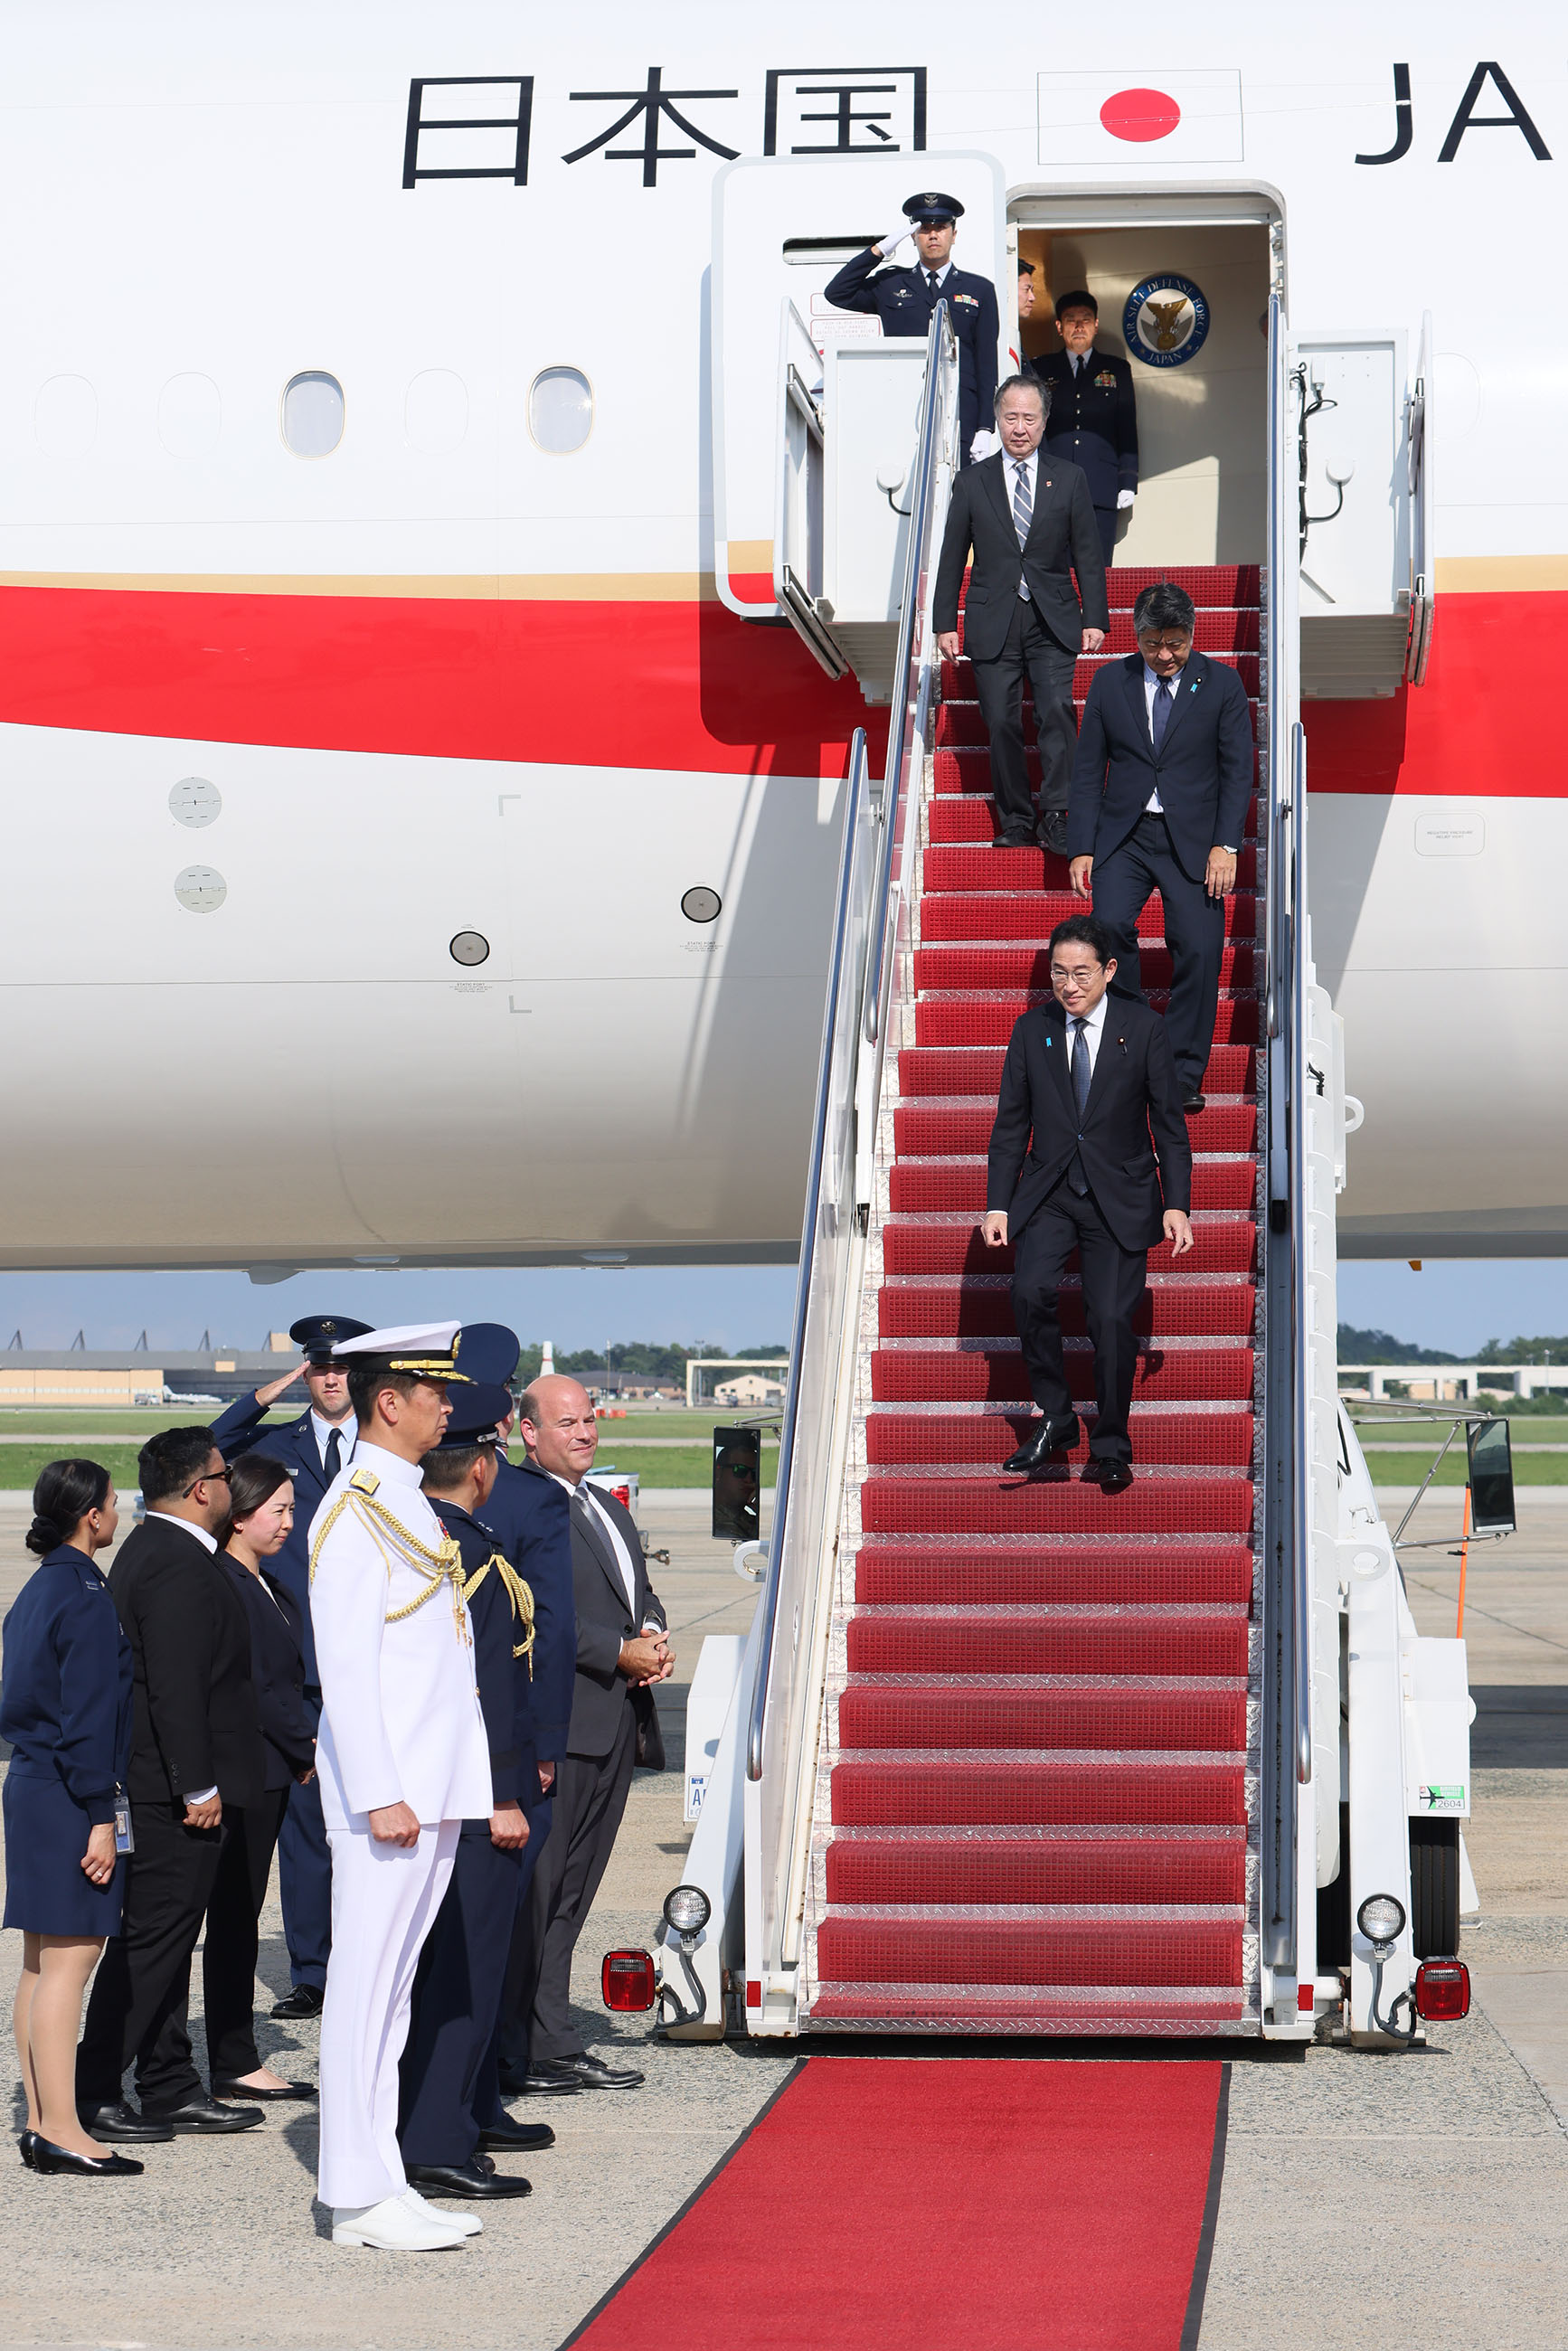 Prime Minister Kishida arriving in Washington D.C. (2)